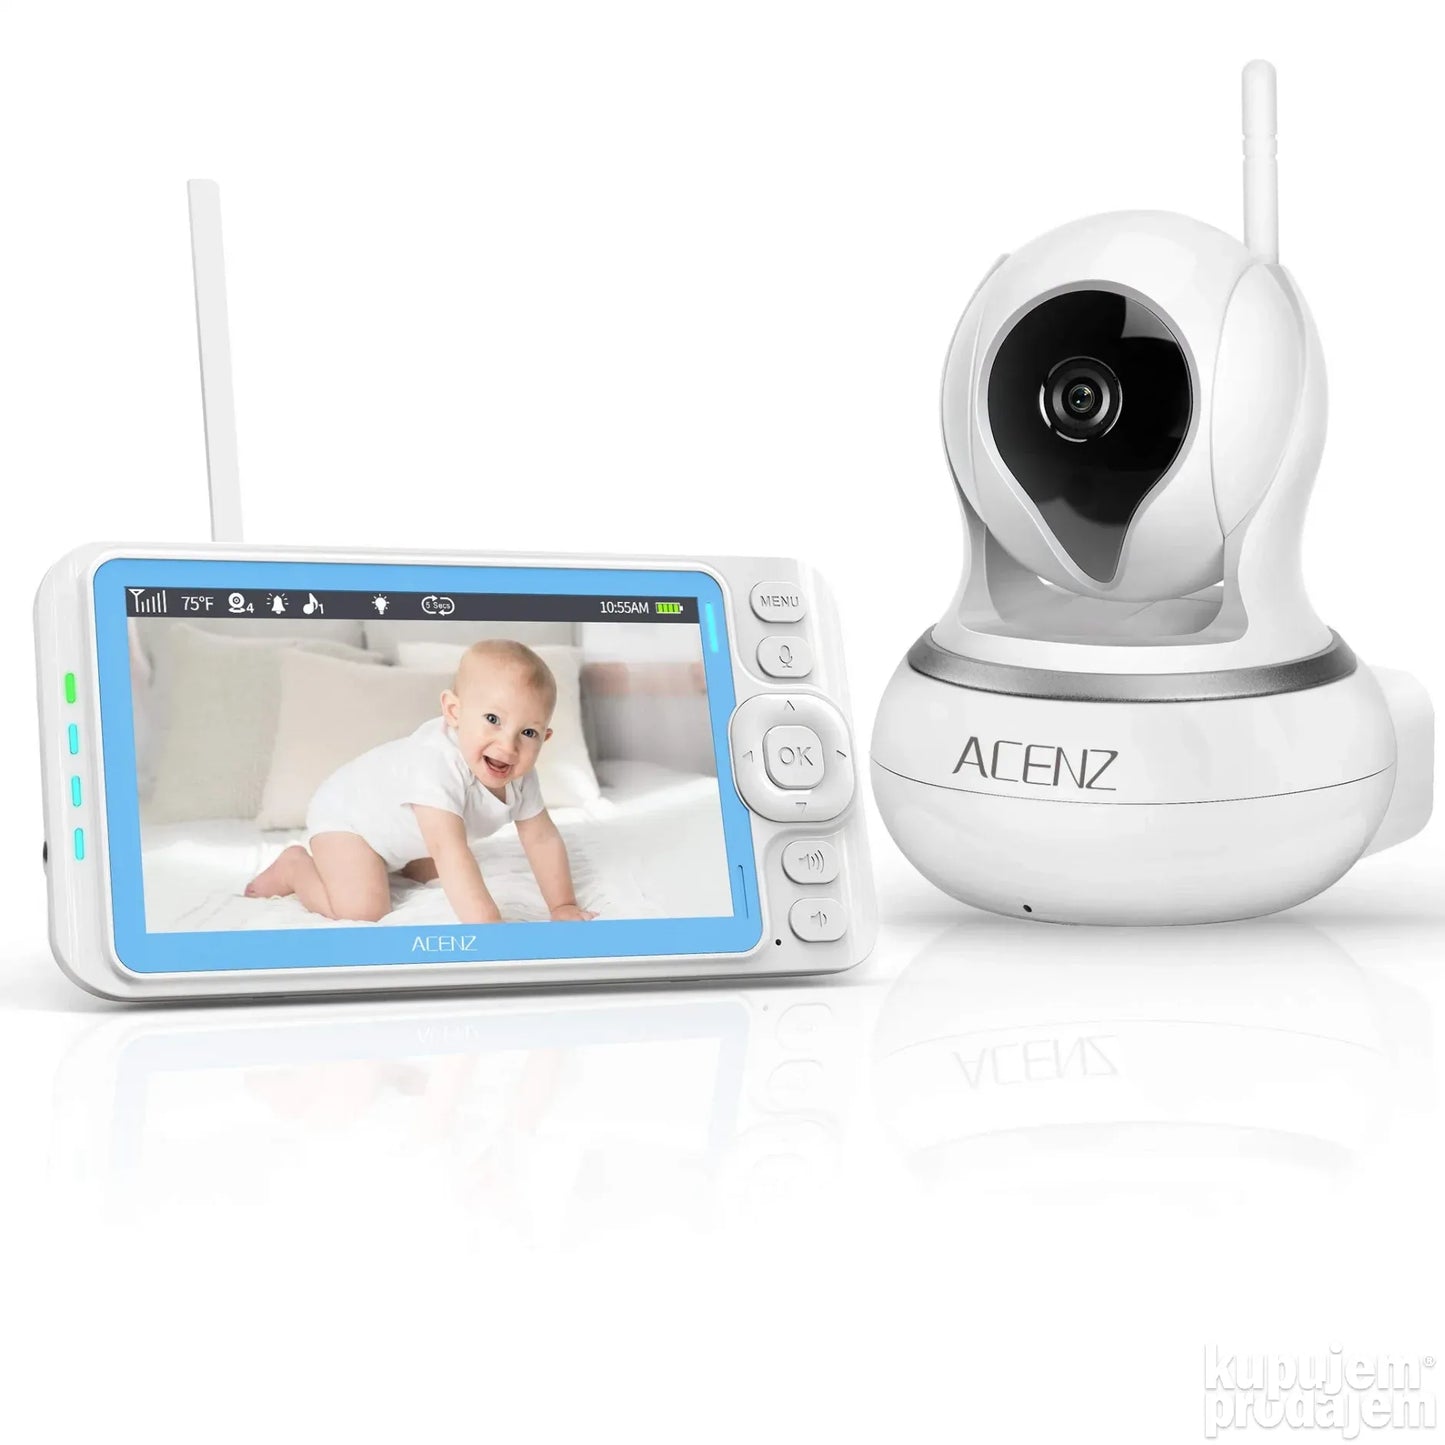 Bebi Monitor Bebi Alarm sa kamerom i termometrom 5inca Ekran - Bebi Monitor Bebi Alarm sa kamerom i termometrom 5inca Ekran